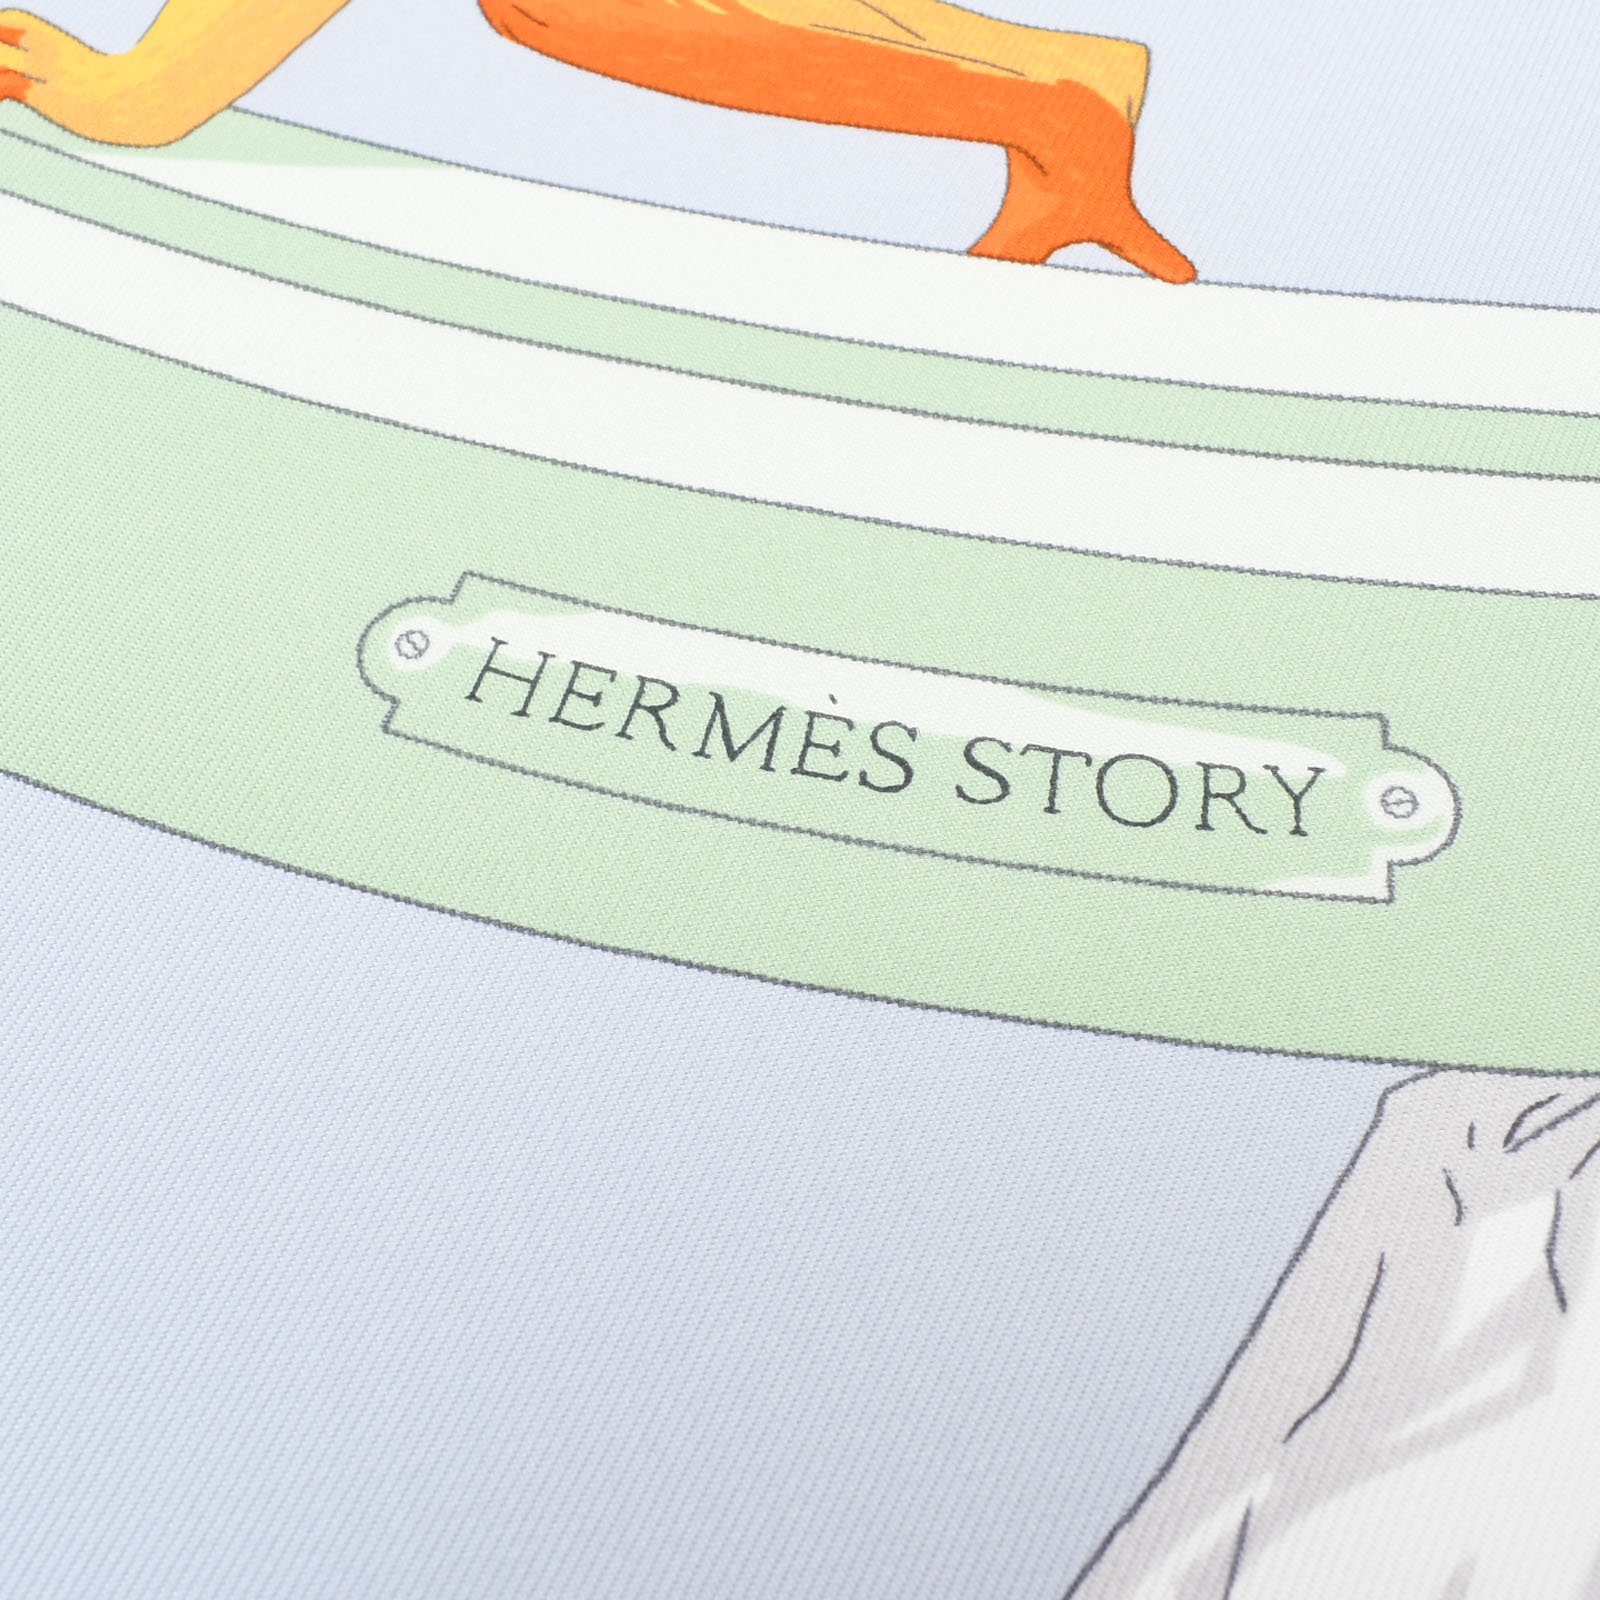 エルメス / HERMES カレ 90 Hermes Story ブルー シルク100